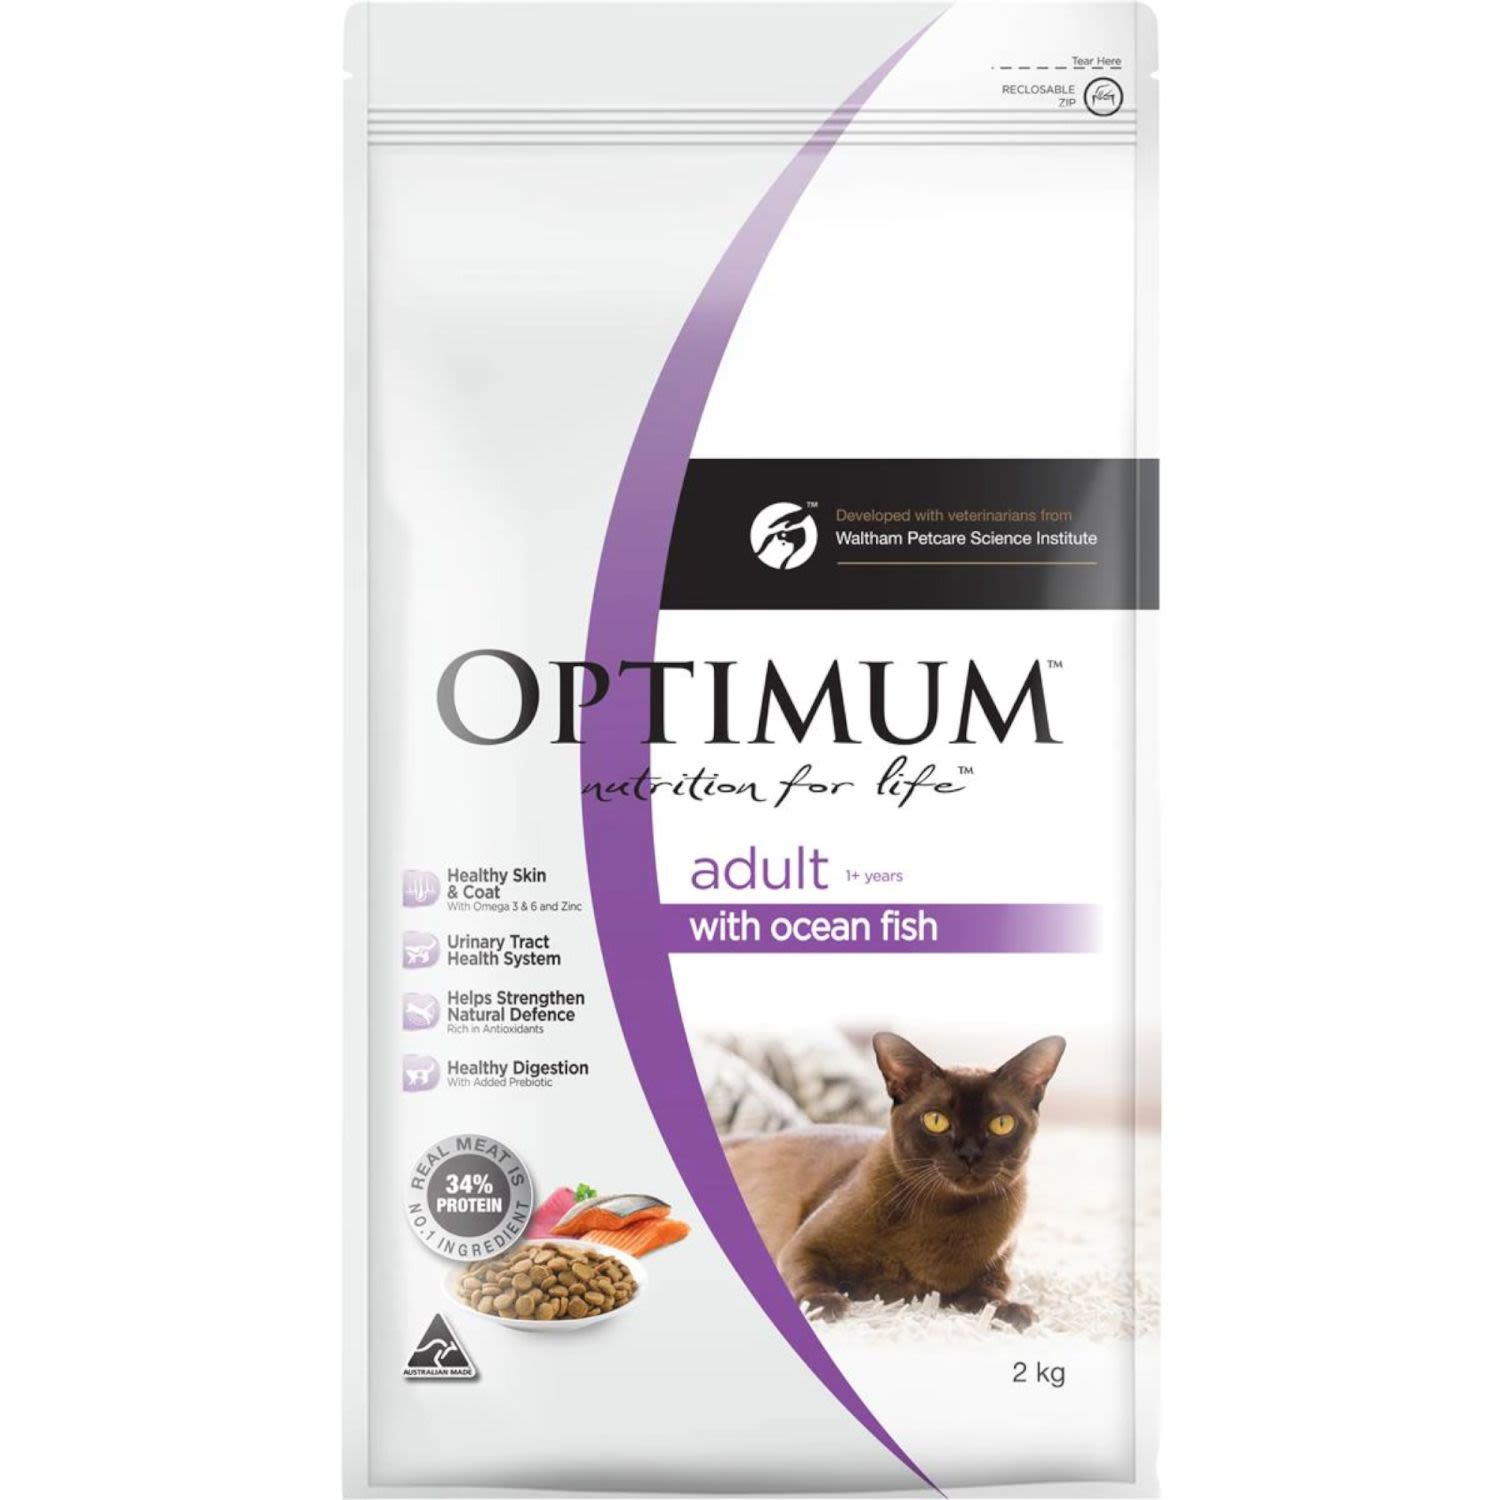 Optimum Dry Cat Food With Ocean Fish Bag, 2 Kilogram